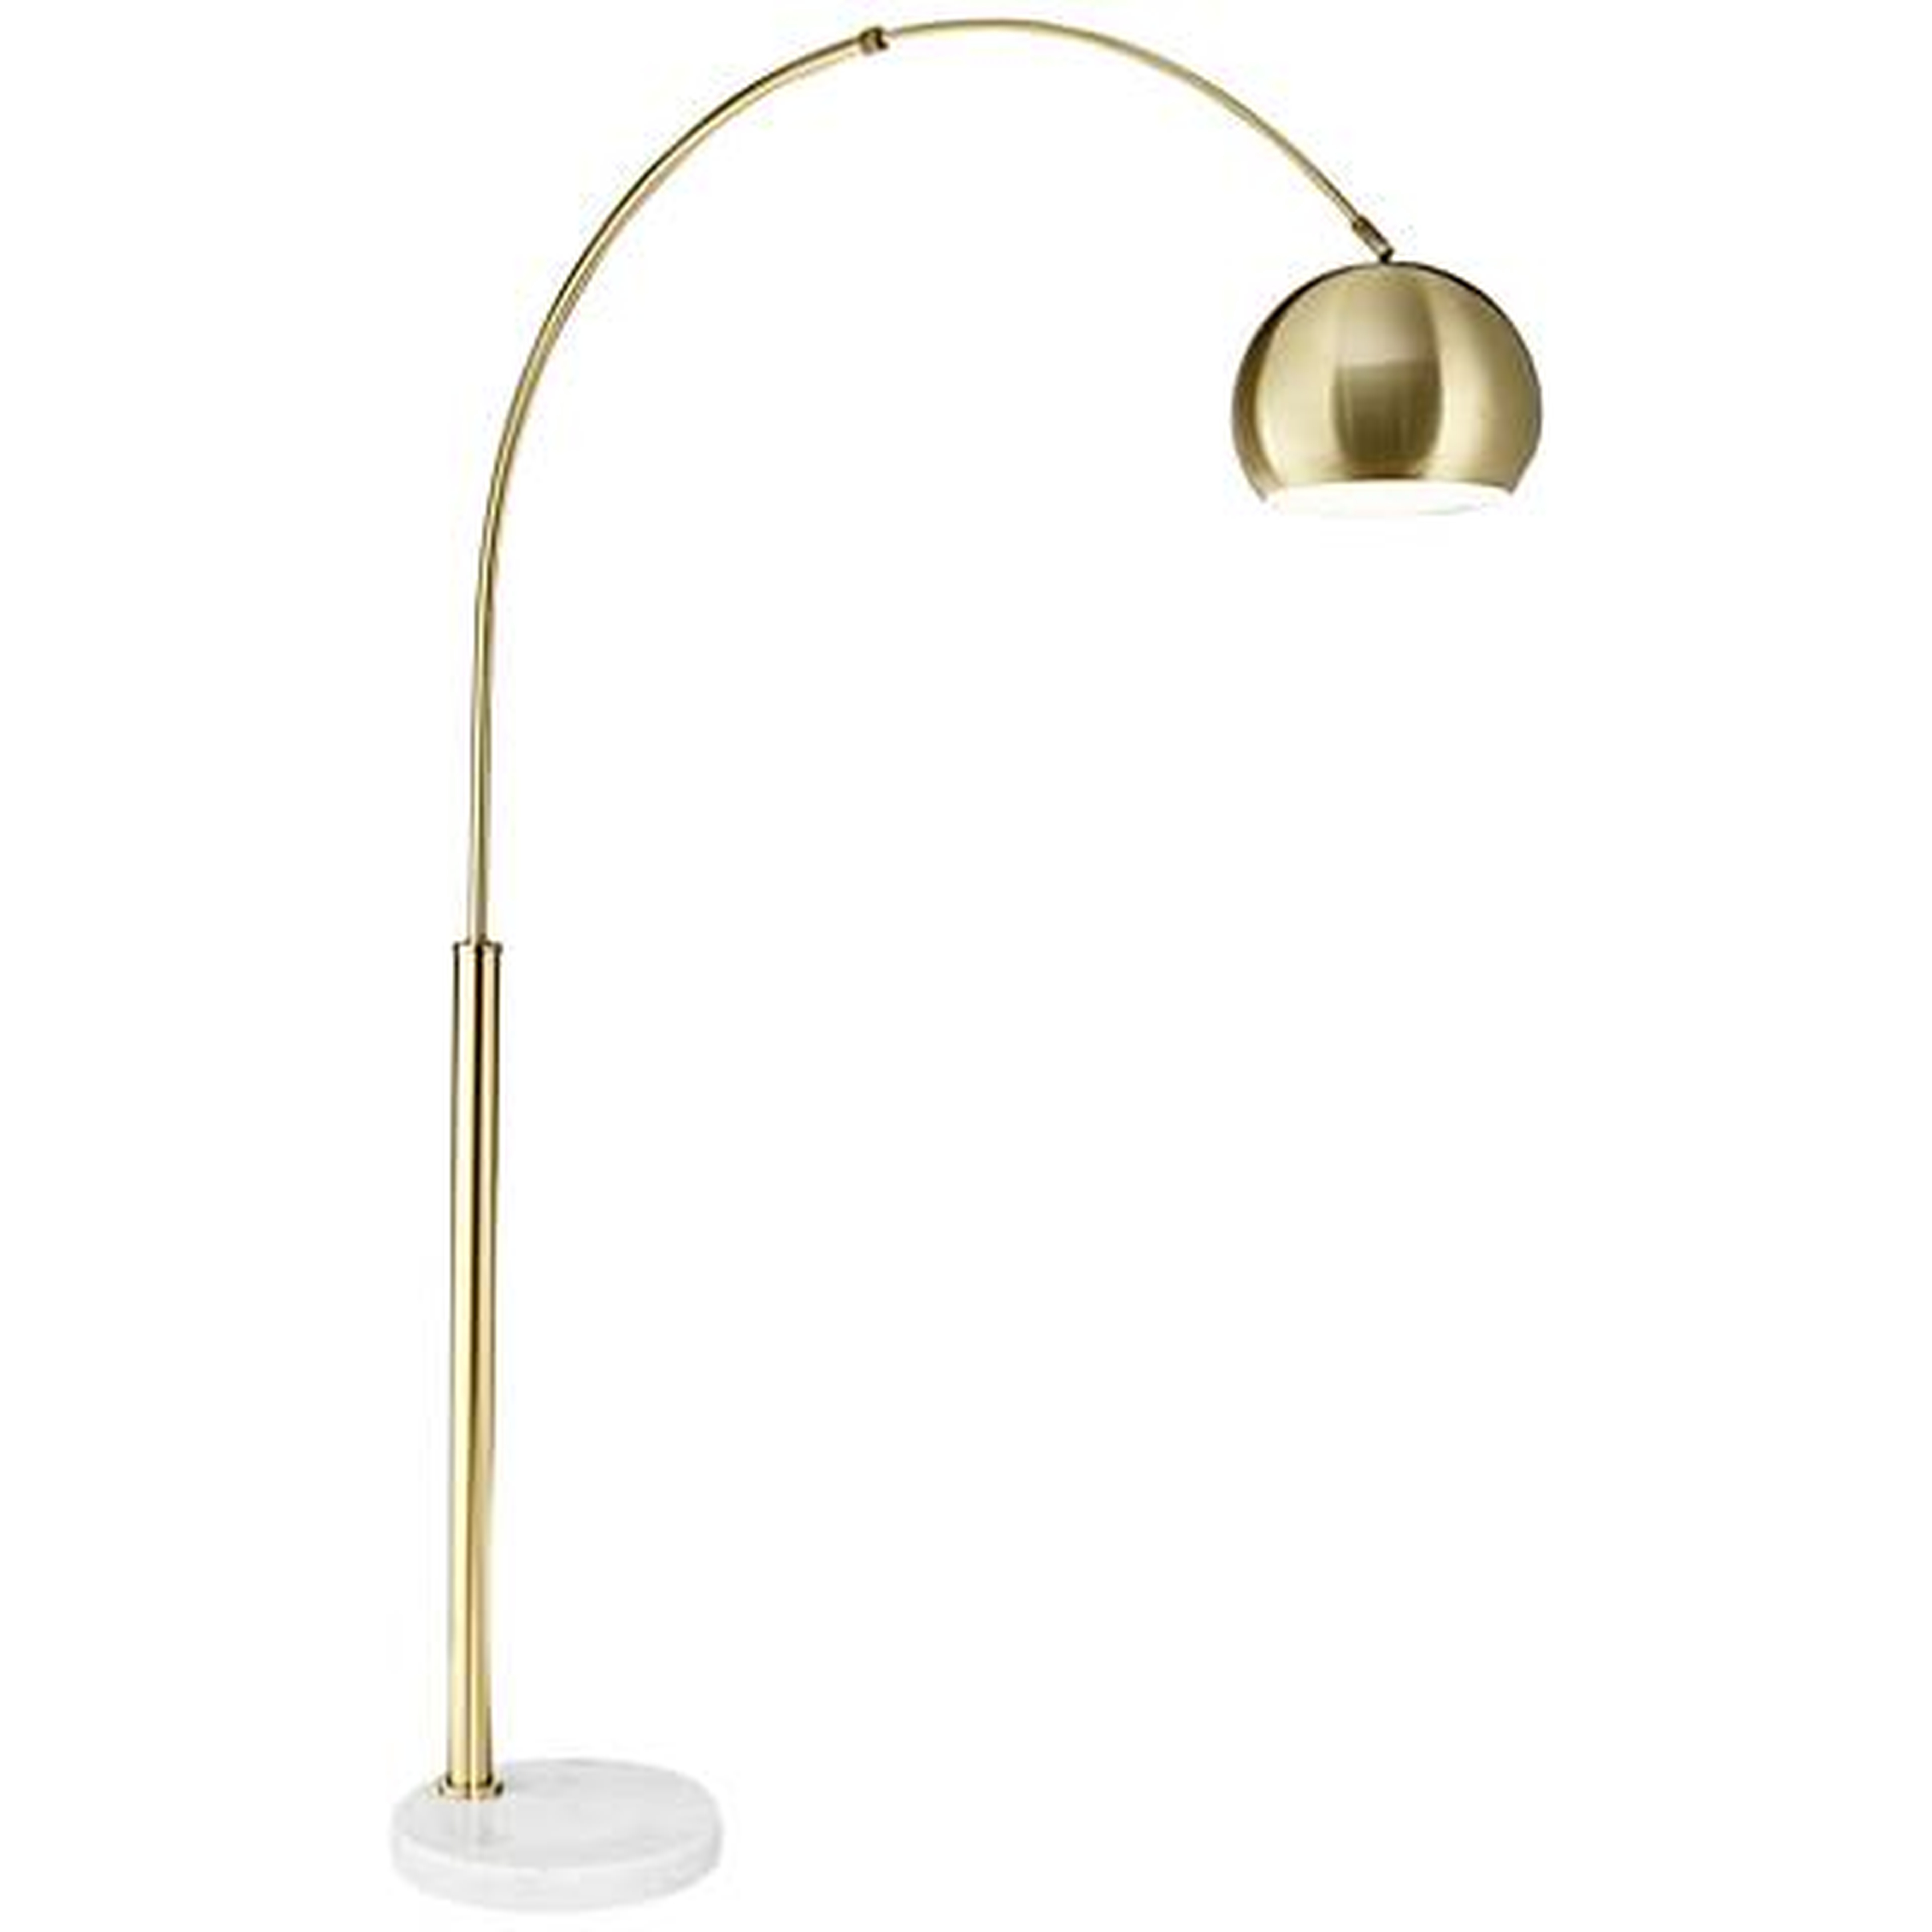 Basque Arc Floor Lamp gold - Lamps Plus